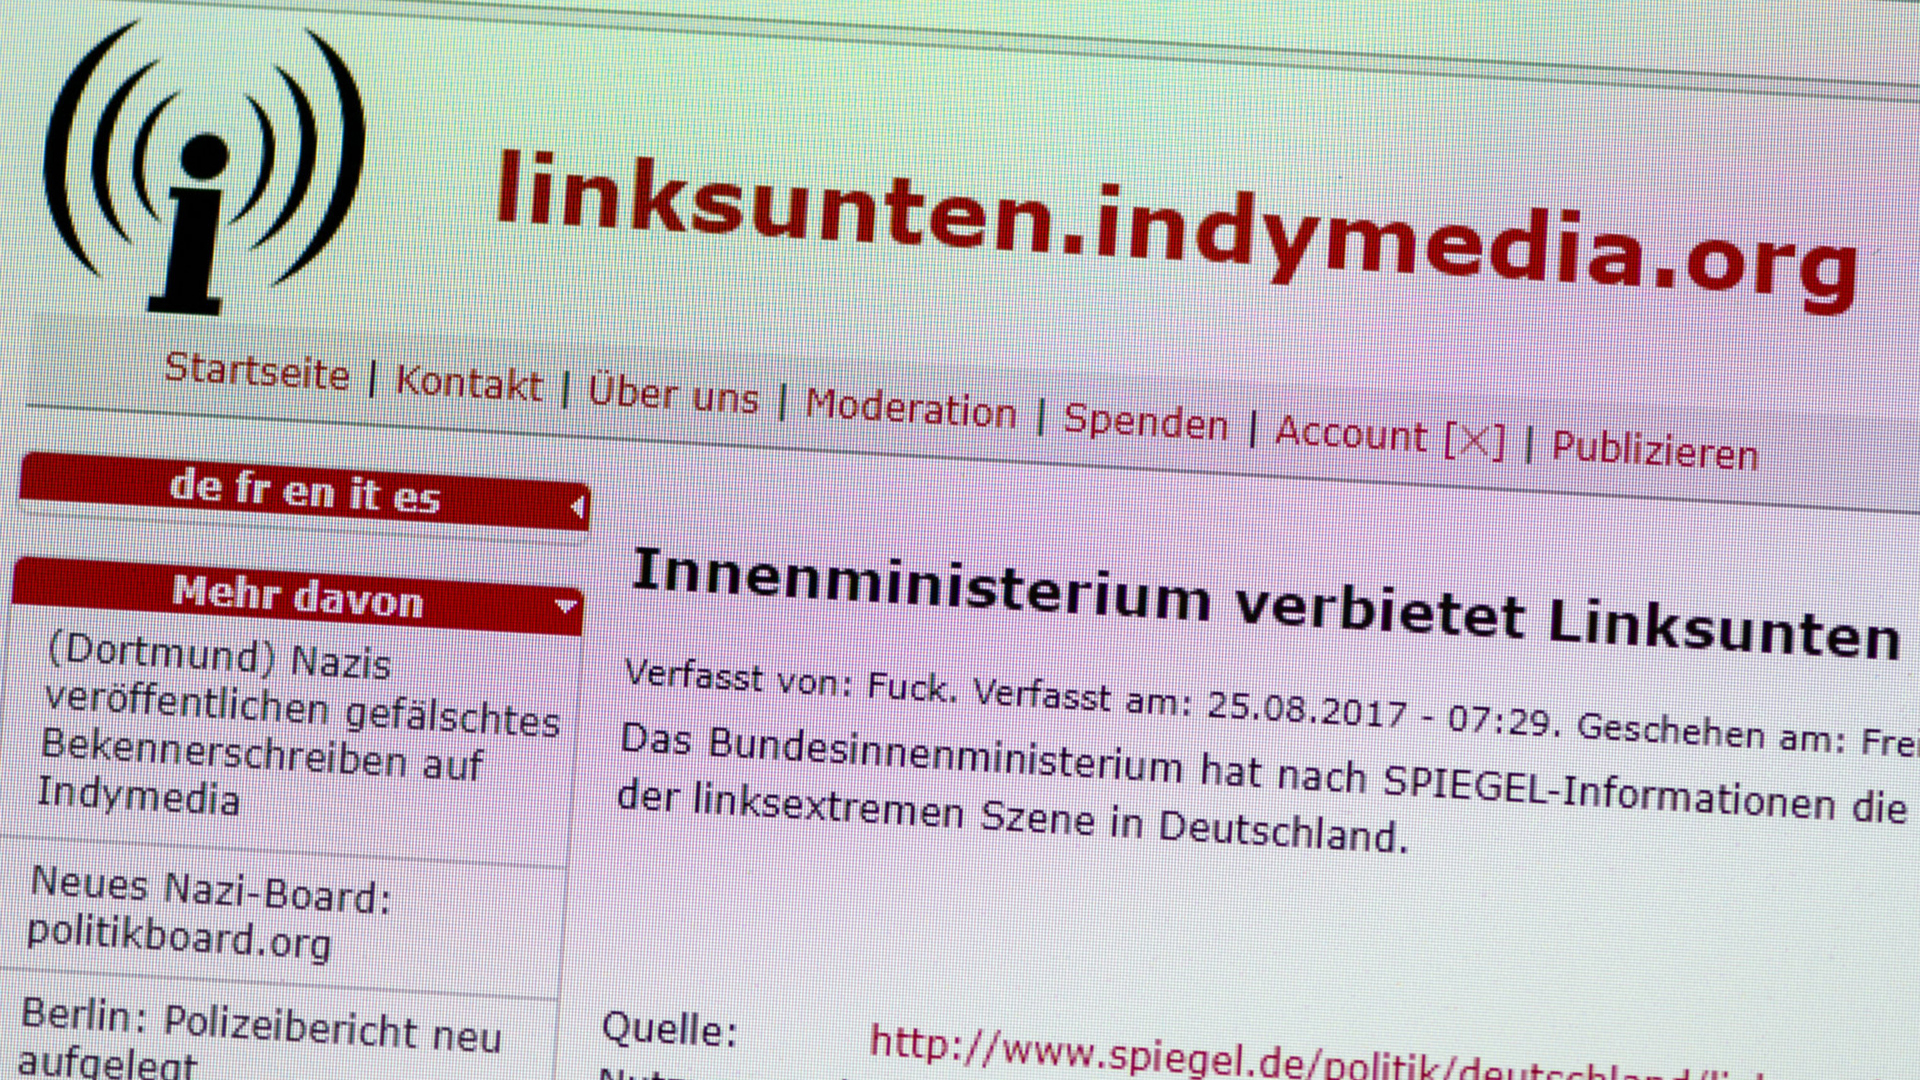 Die Internetseite der linksextremistischen Plattform "linksunten.indymedia.org" (Screenshot)